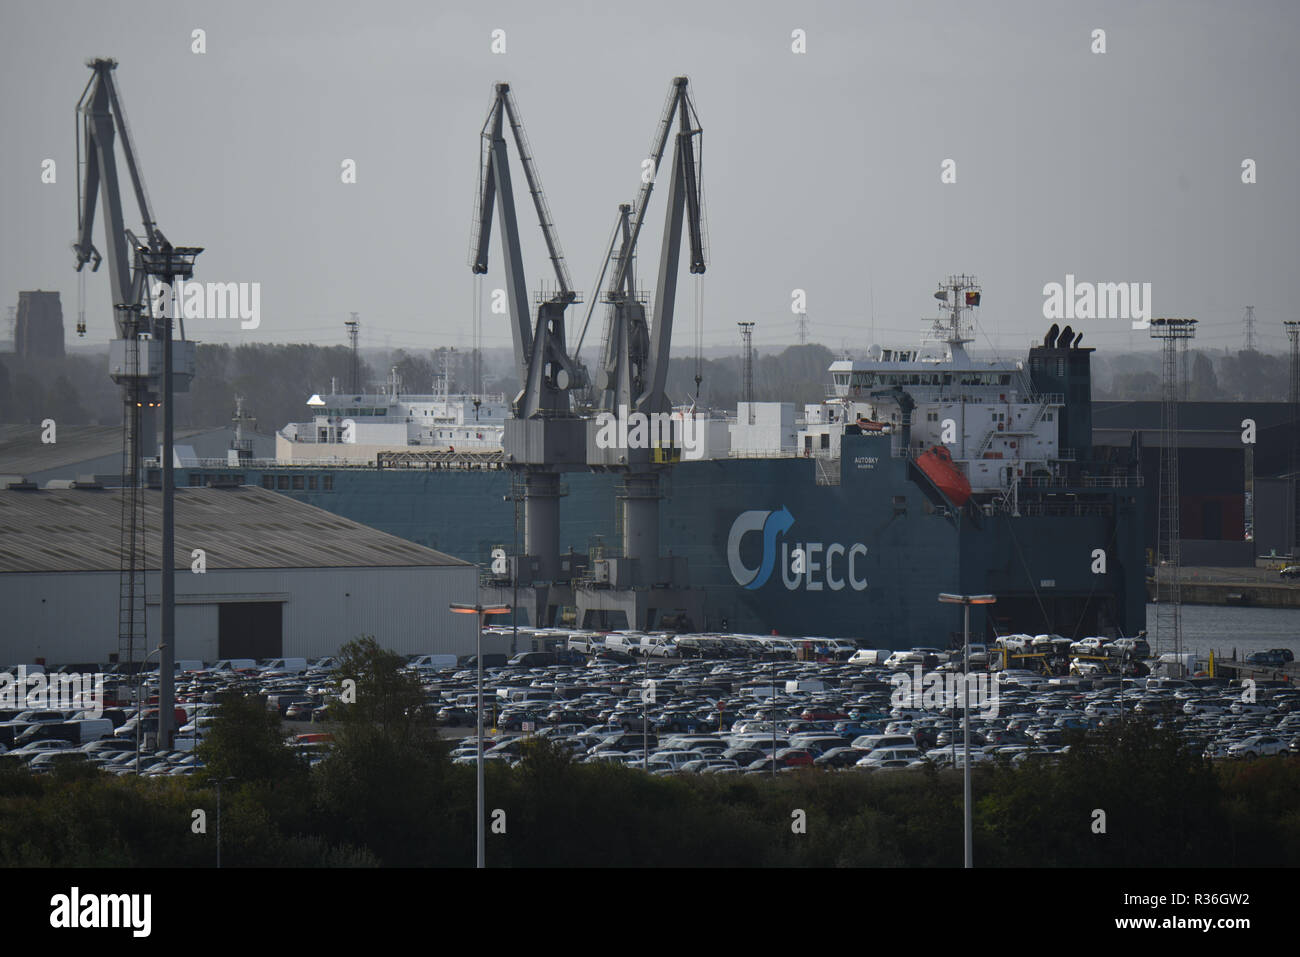 October 23, 2018 - Zeebrugge, Belgium: View of the port of Zeebrugge, the world's largest car terminal, which is now preparing itself for a hard Brexit.  Vue d'ensemble du port de Bruges-Zeebruges. Il s'agit du premier port mondial dans le domaine de l'automobile, avec le chargement de pres de 2.8 millions de vehicules, dont 900.000 a destination du Royaume-Uni. *** FRANCE OUT / NO SALES TO FRENCH MEDIA *** Stock Photo